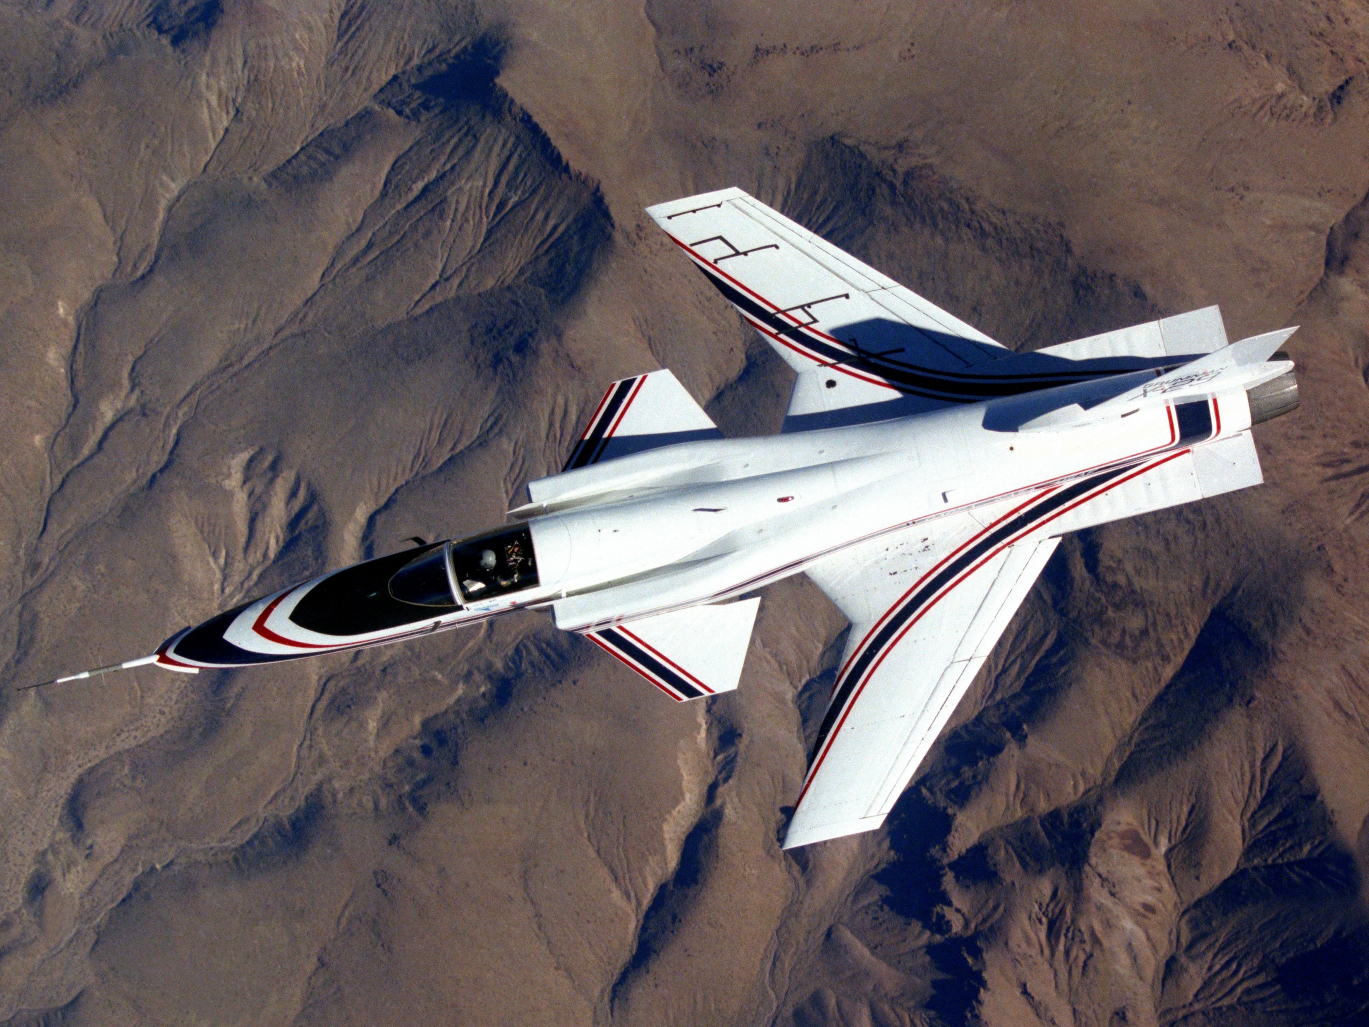 X-29 in flight.